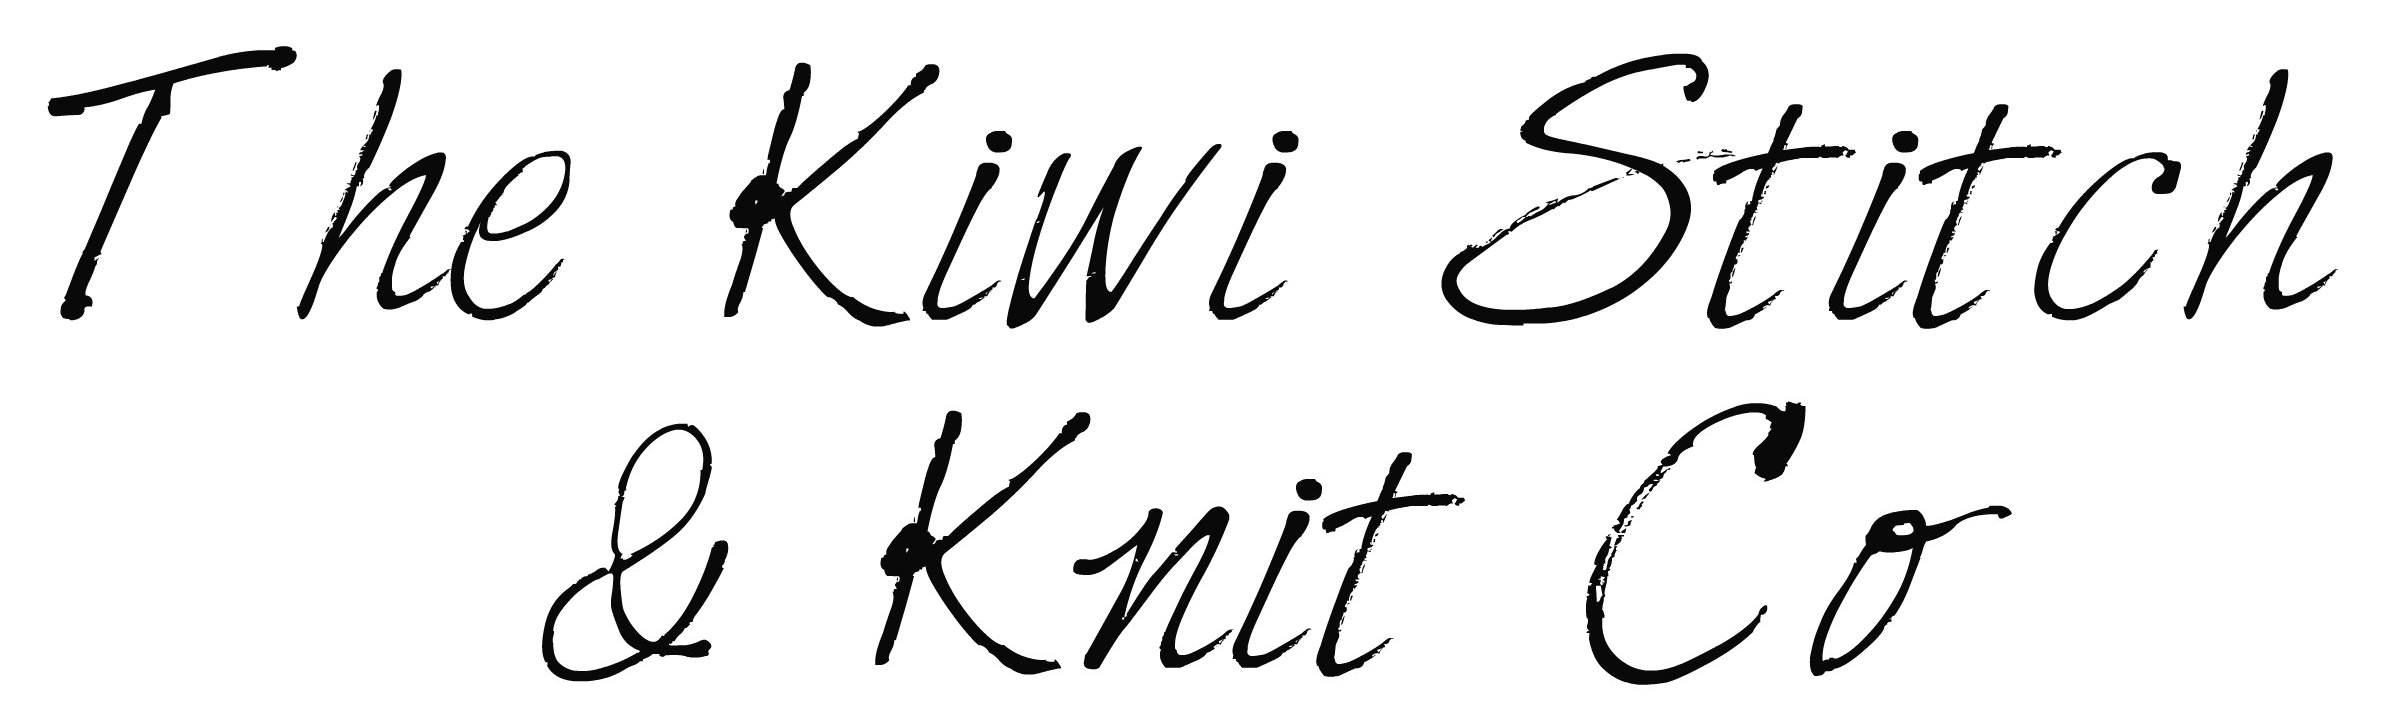 The Kiwi Stitch & Knit Co